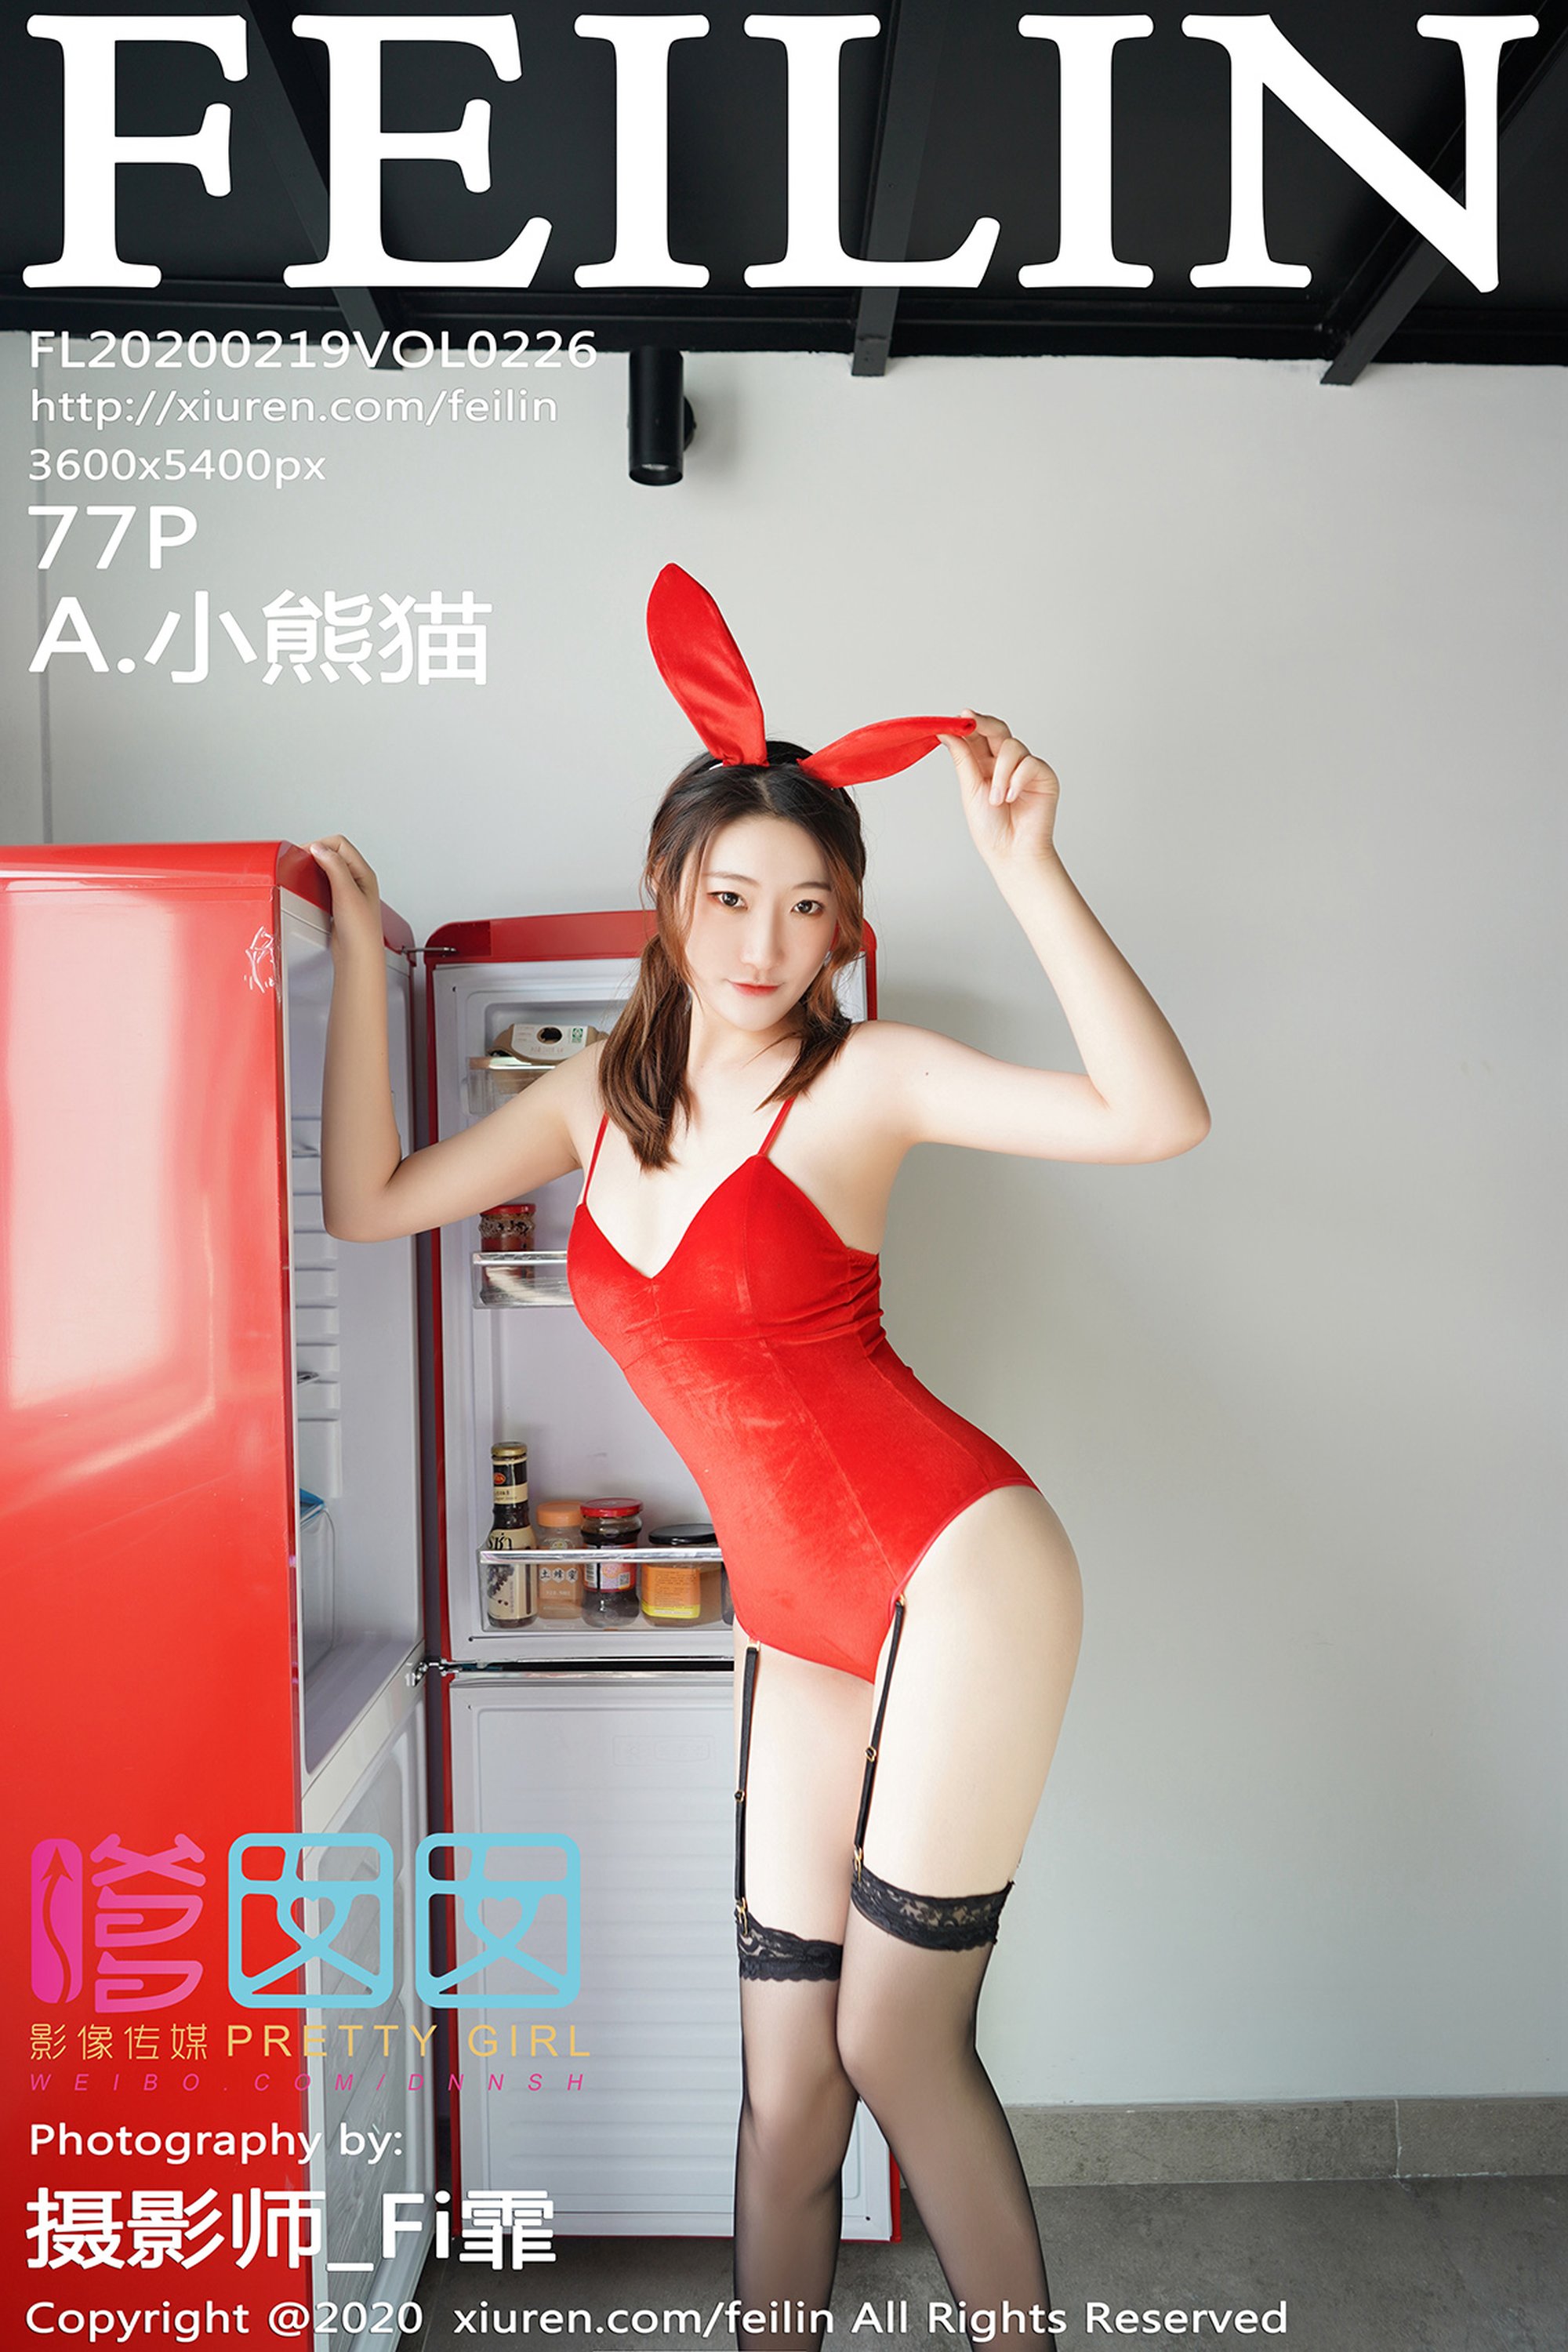 【FEILIN嗲囡囡系列】2020.02.19 Vol.226 A.小熊貓 性感寫真【78P】 - 貼圖 - 絲襪美腿 -